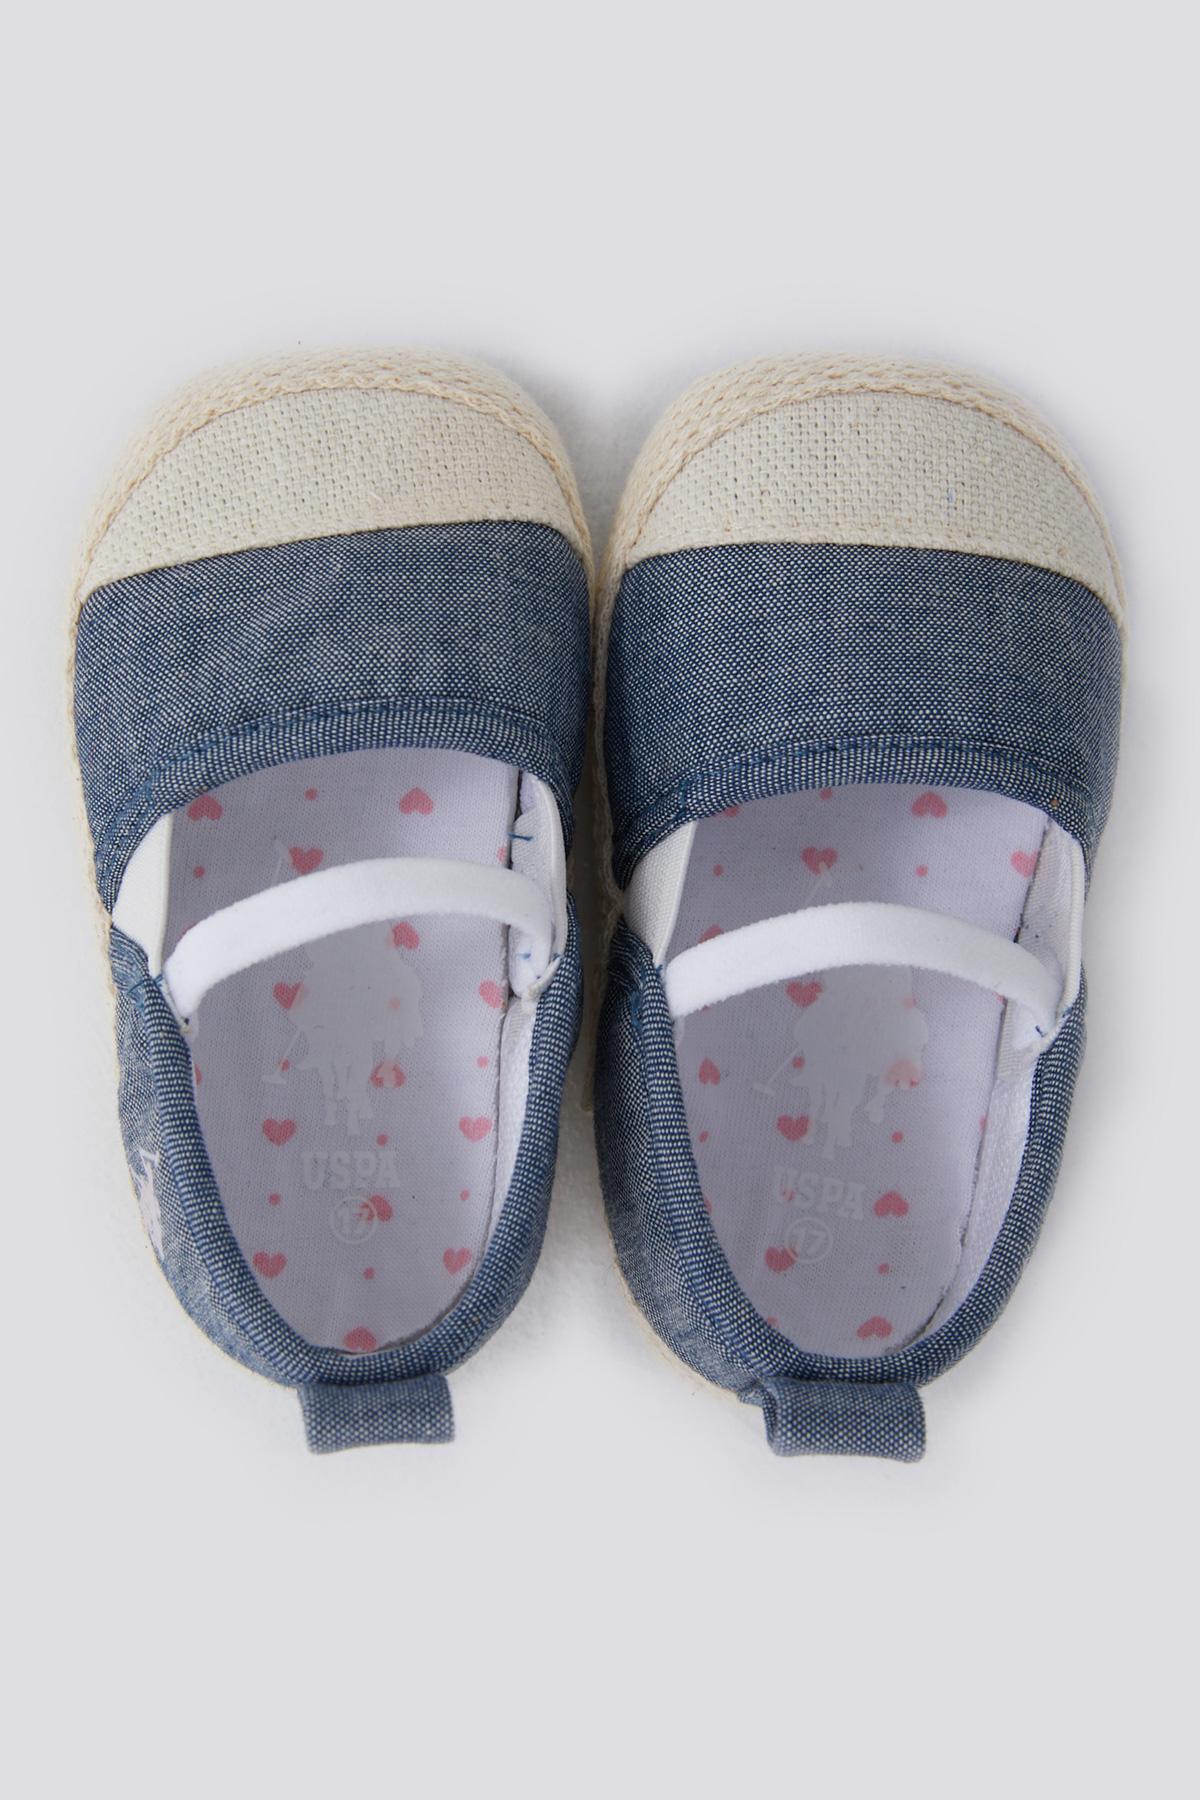 Selected image for U.S. POLO ASSN. Cipele za bebe teget